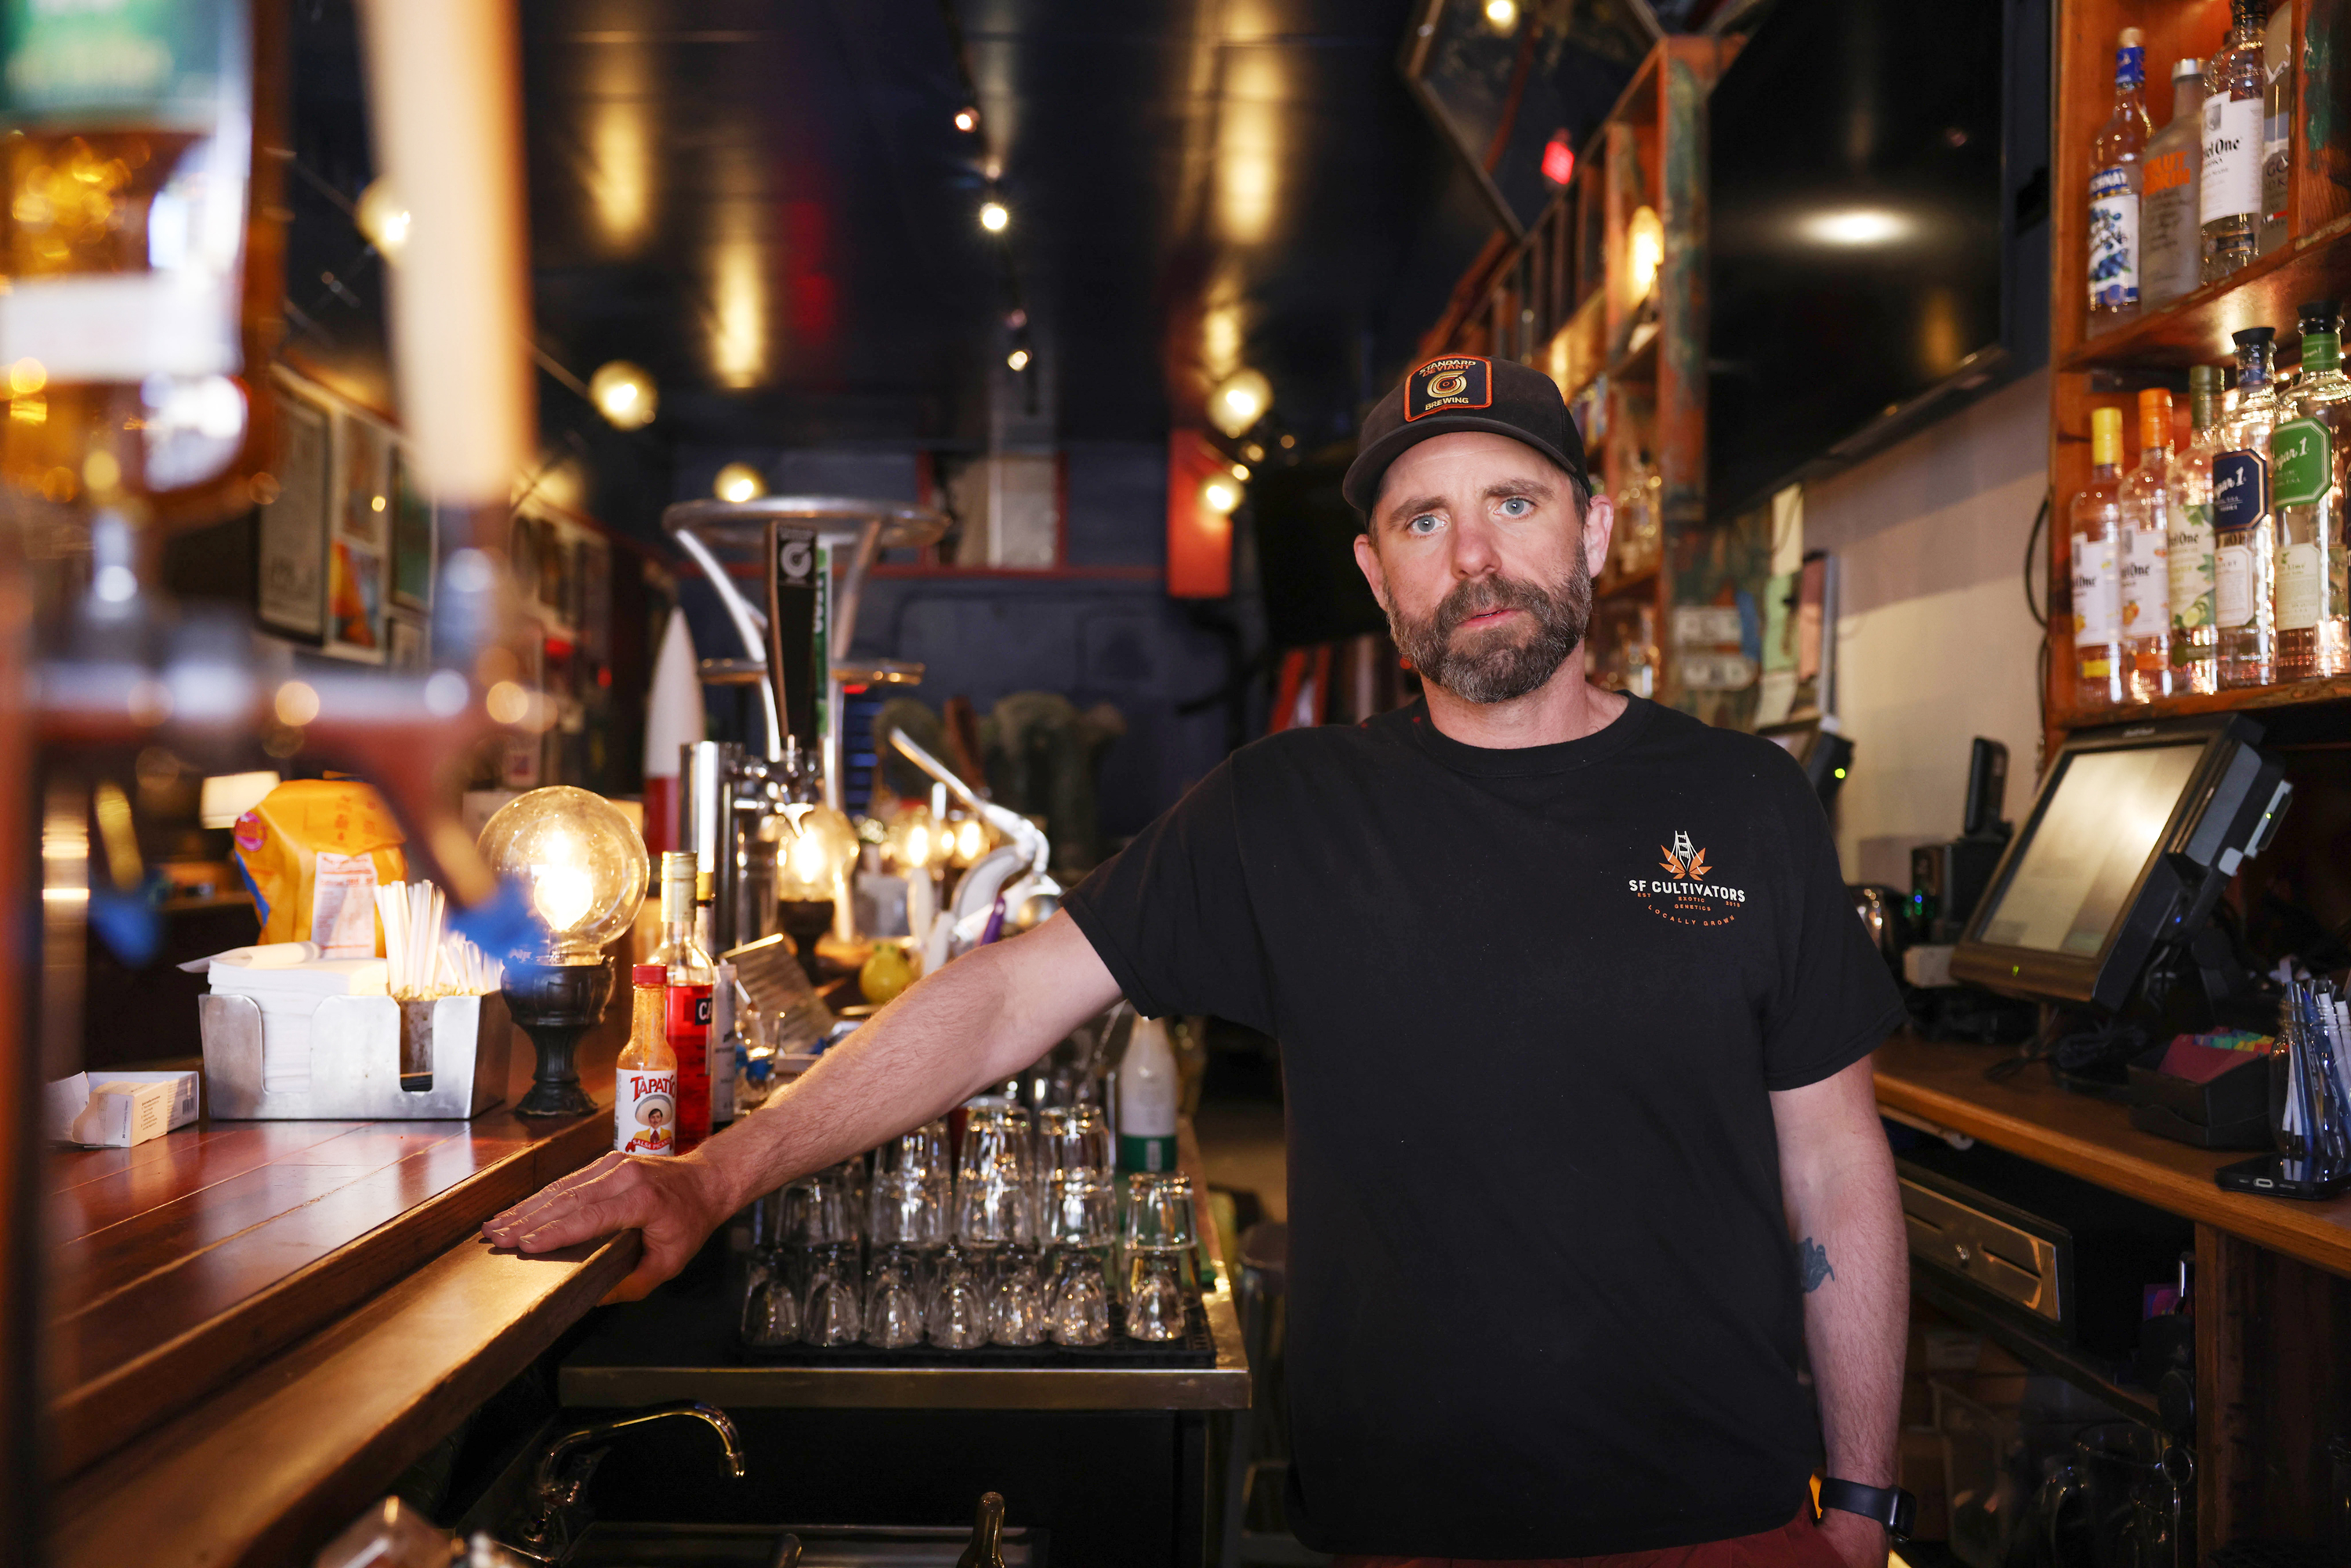 A man wearing black shirt stands at a bar.